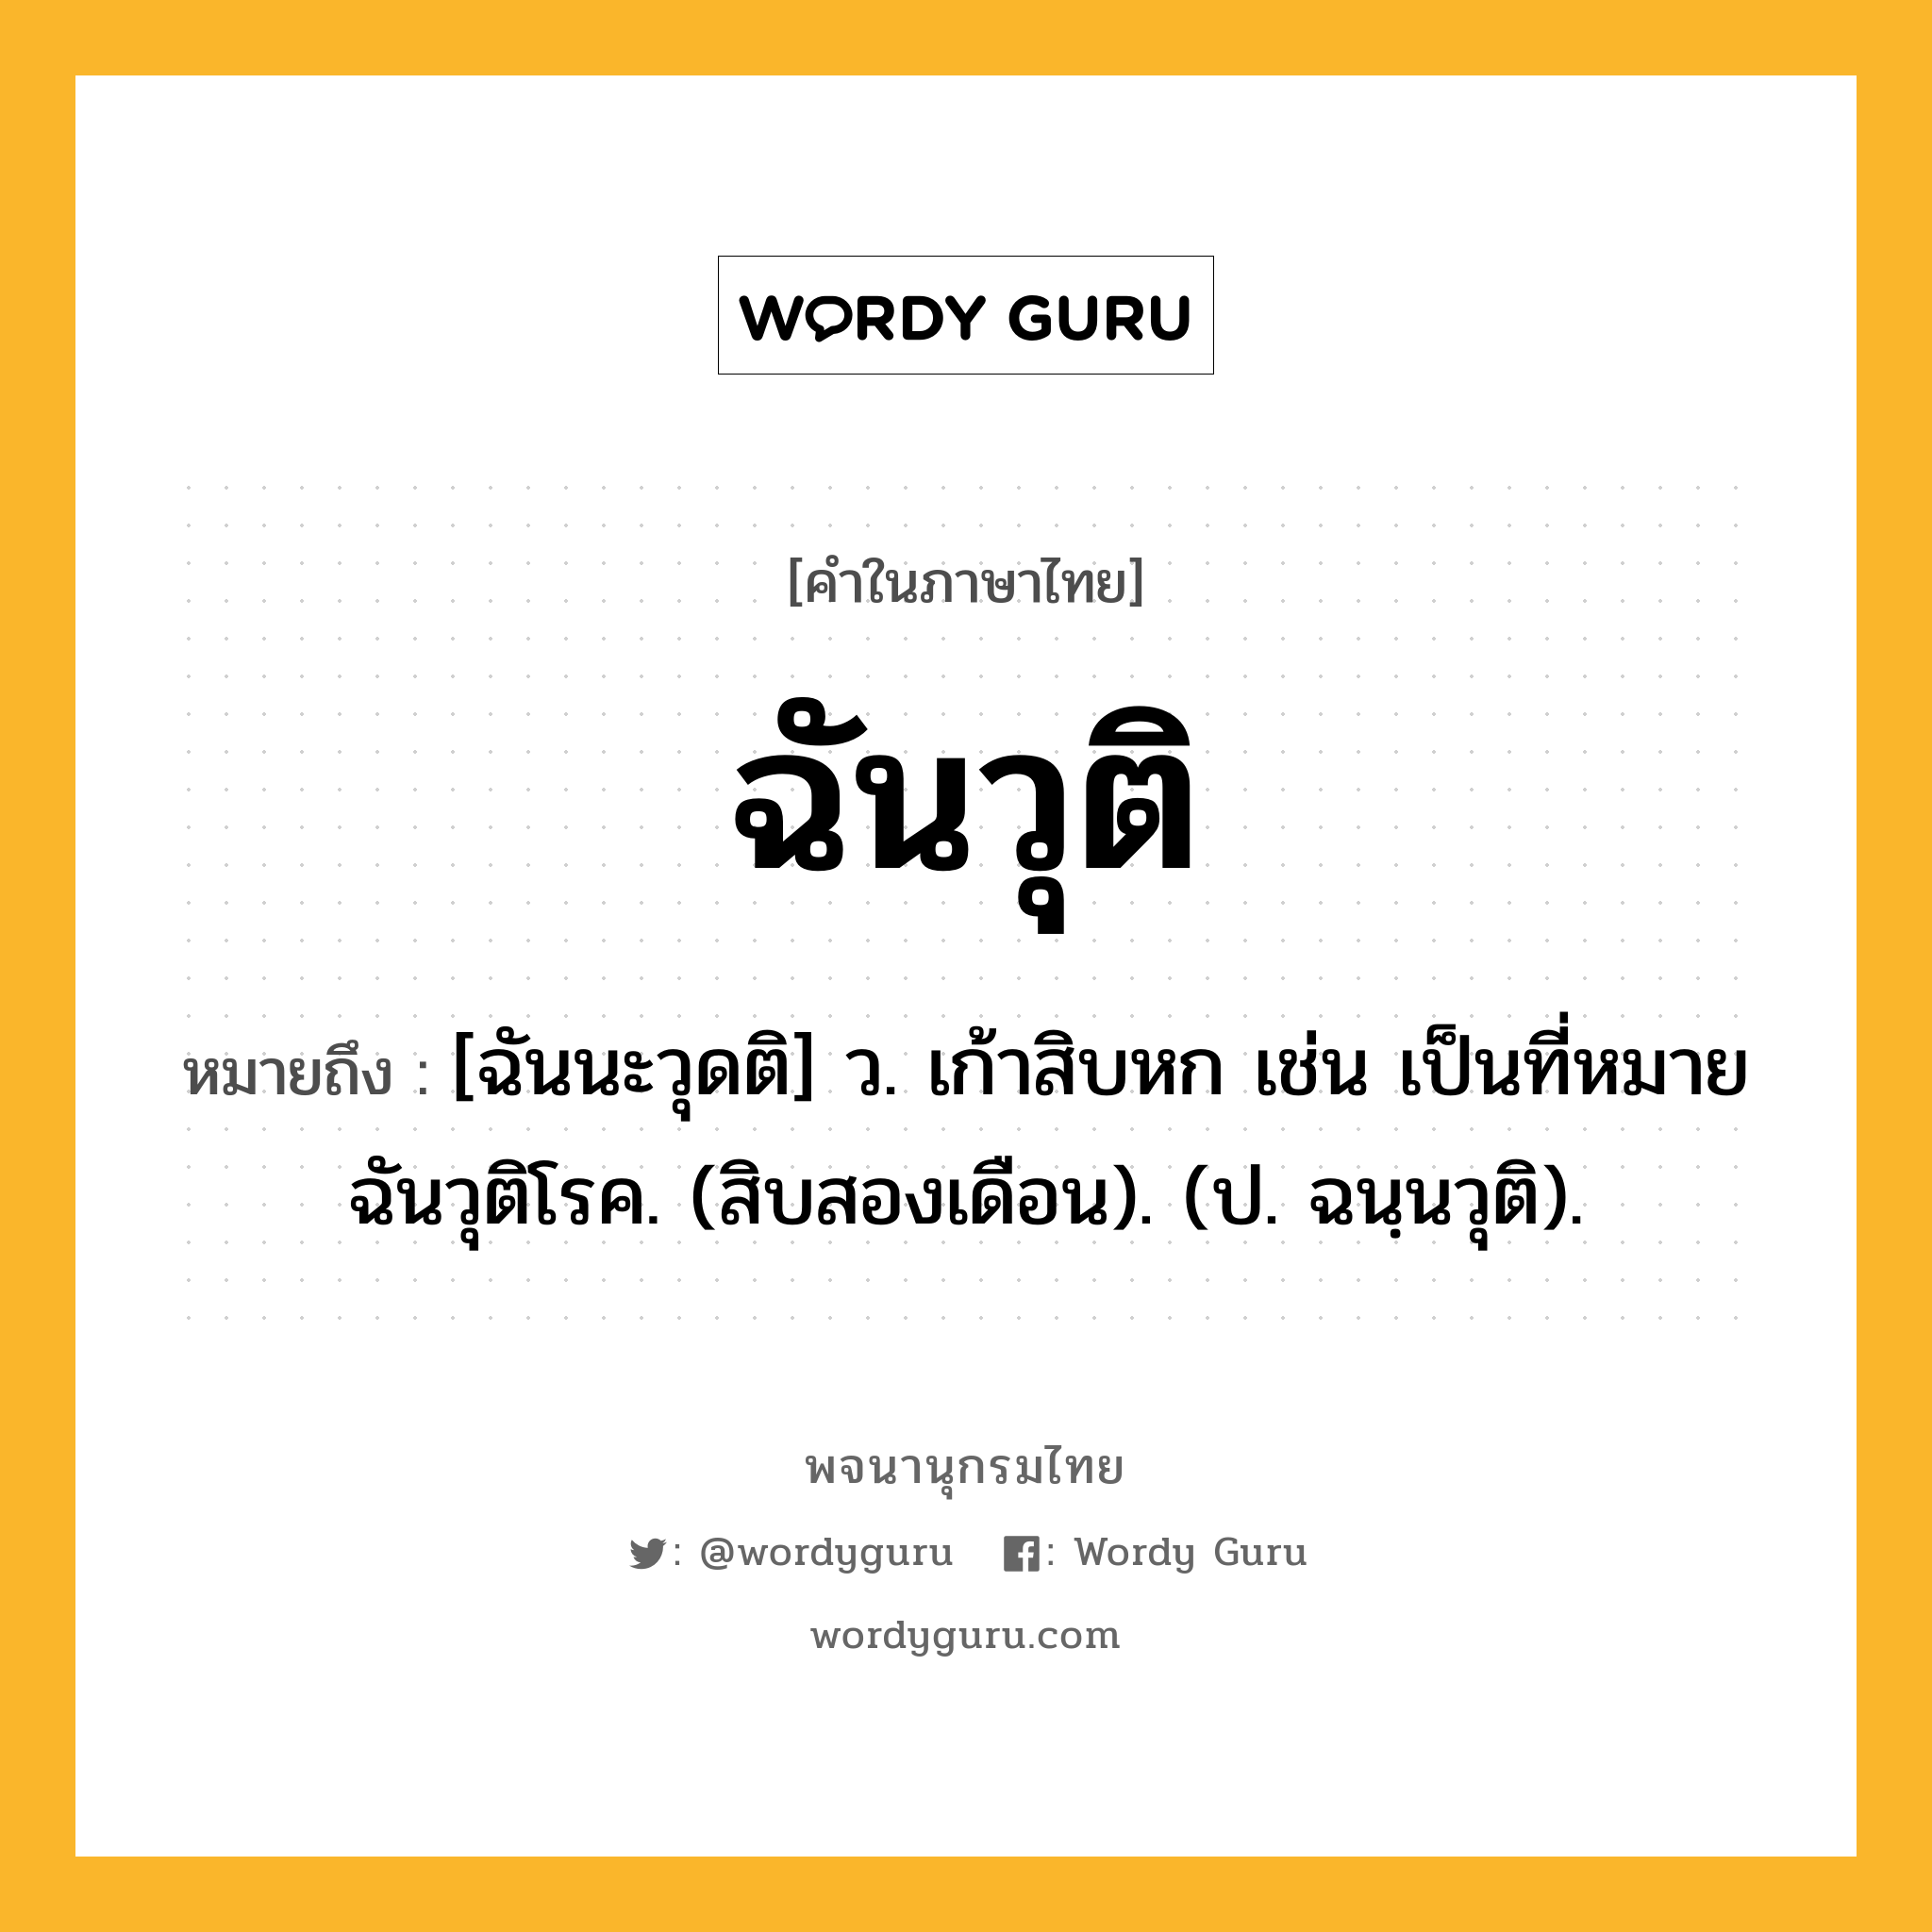 ฉันวุติ หมายถึงอะไร?, คำในภาษาไทย ฉันวุติ หมายถึง [ฉันนะวุดติ] ว. เก้าสิบหก เช่น เป็นที่หมายฉันวุติโรค. (สิบสองเดือน). (ป. ฉนฺนวุติ).